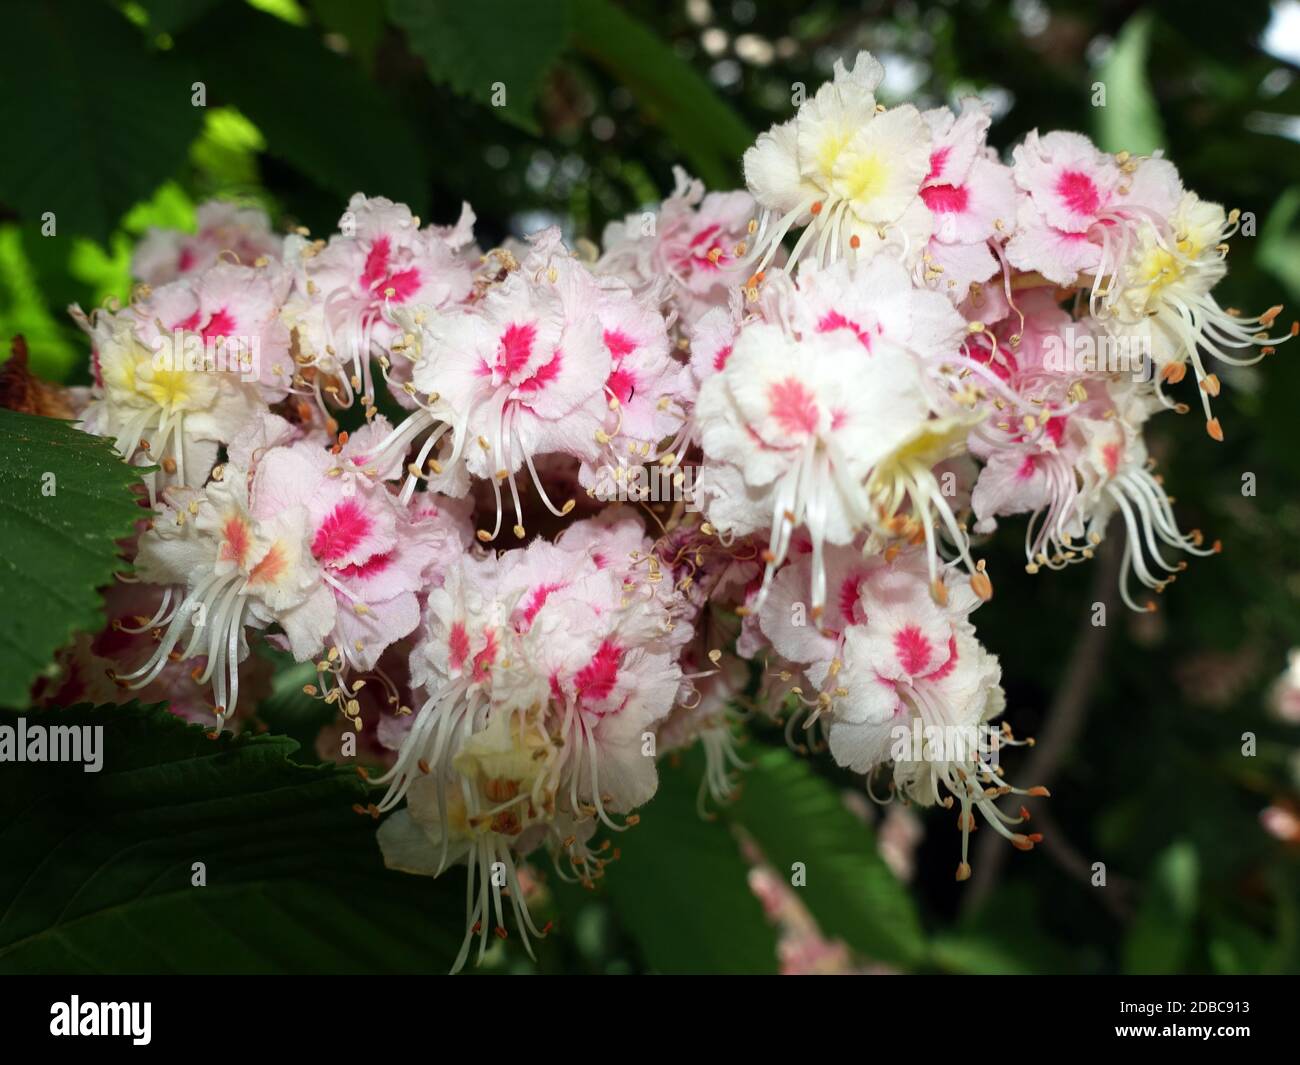 Gewöhnliche Rosskastanie (Aesculus hippocastanum) oder Weiße Rosskastanie - Blütenstand, Weilerswist, Nordrhein-Westfalen, Deutschland Stock Photo